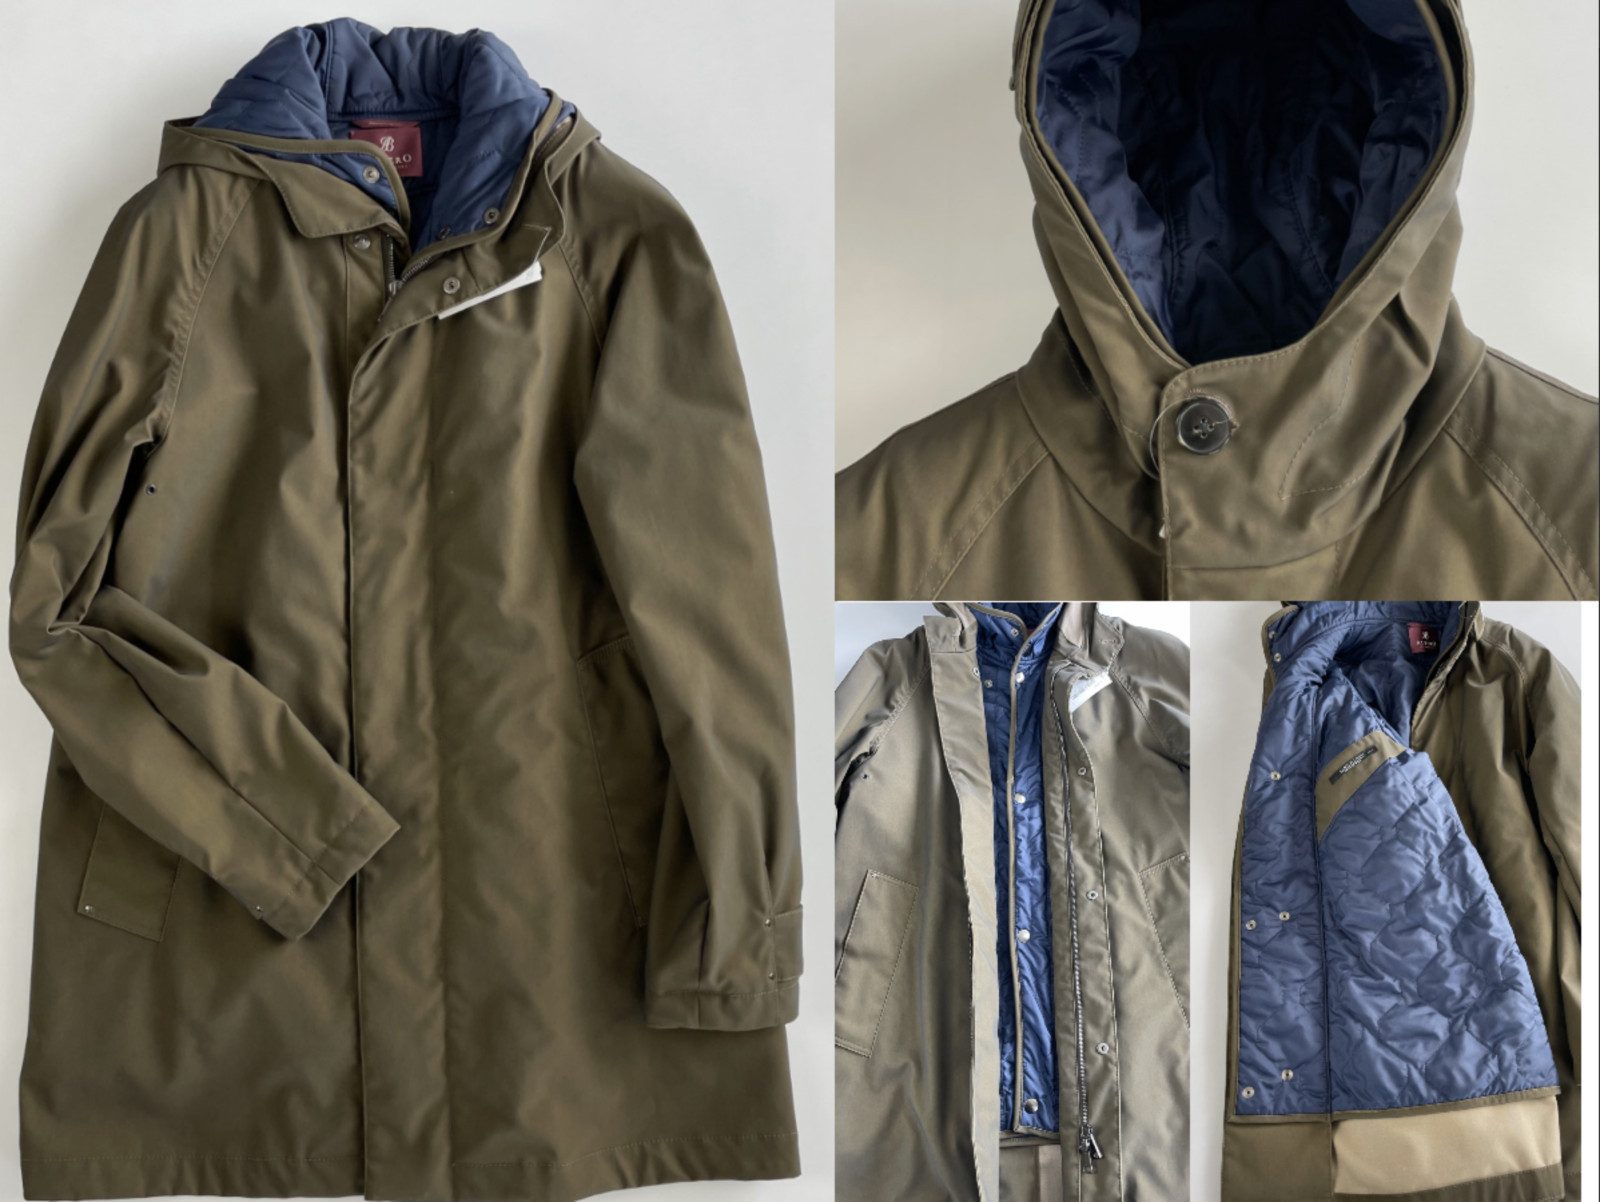 Albero Wollmantel ALBERO ITALY 2in1 Outdoor Parka Vest Weste Jacket Mantel Winter Coat J